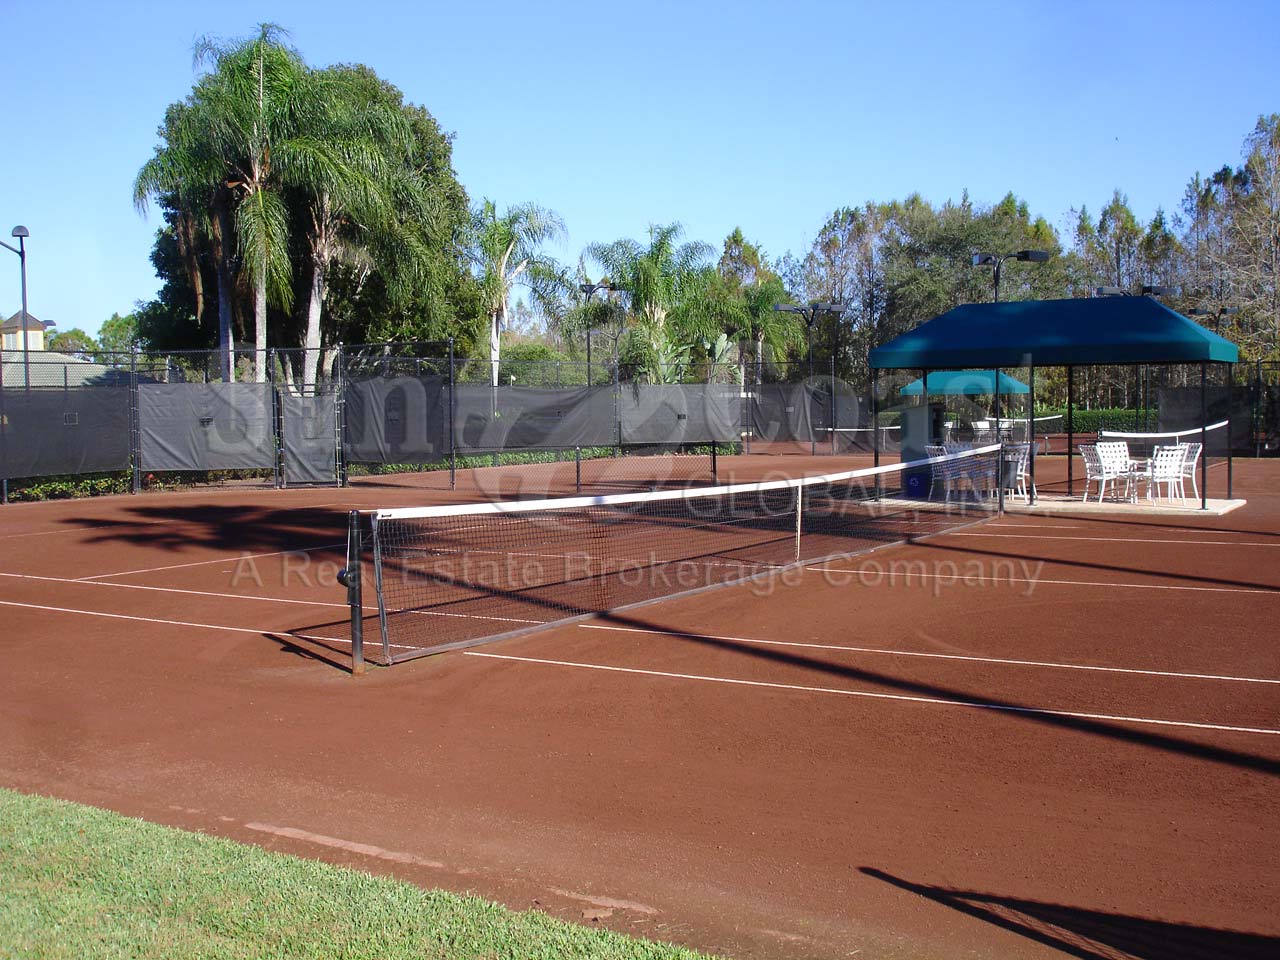 QUAIL WEST Tennis Courts